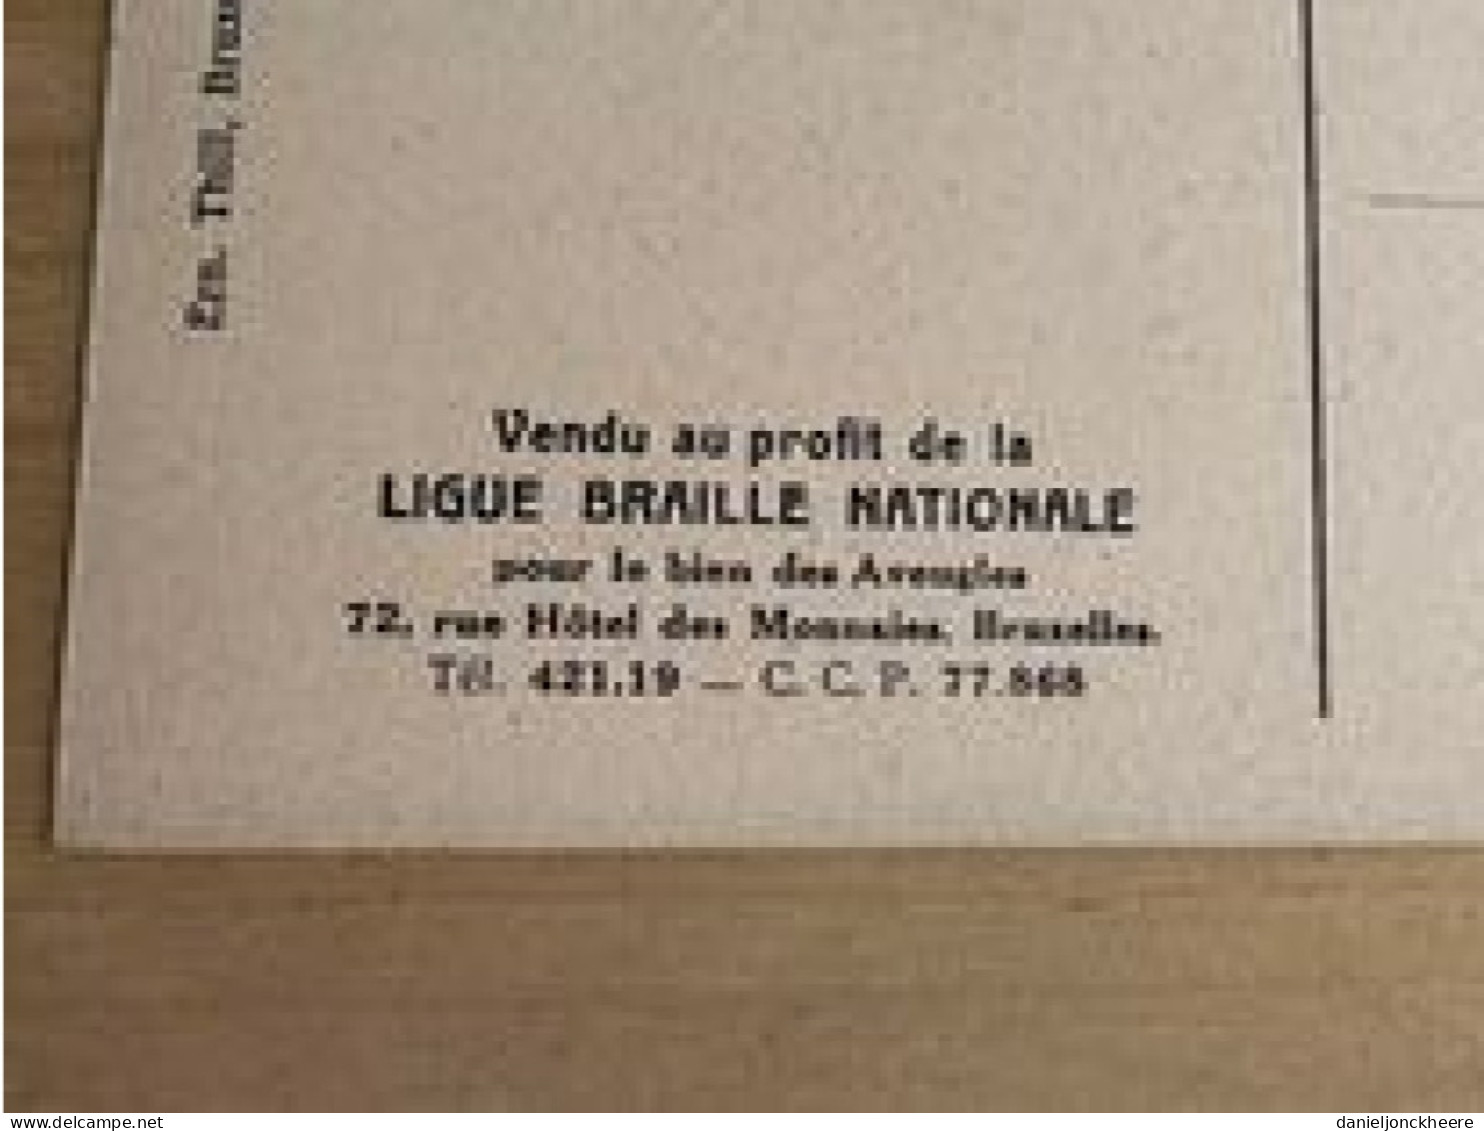 Carte Postale Postkaart Postcard Portrait Du Senateur X Par Cecile Douard Mons 1897 Ligue Braille Nationale - Hommes Politiques & Militaires